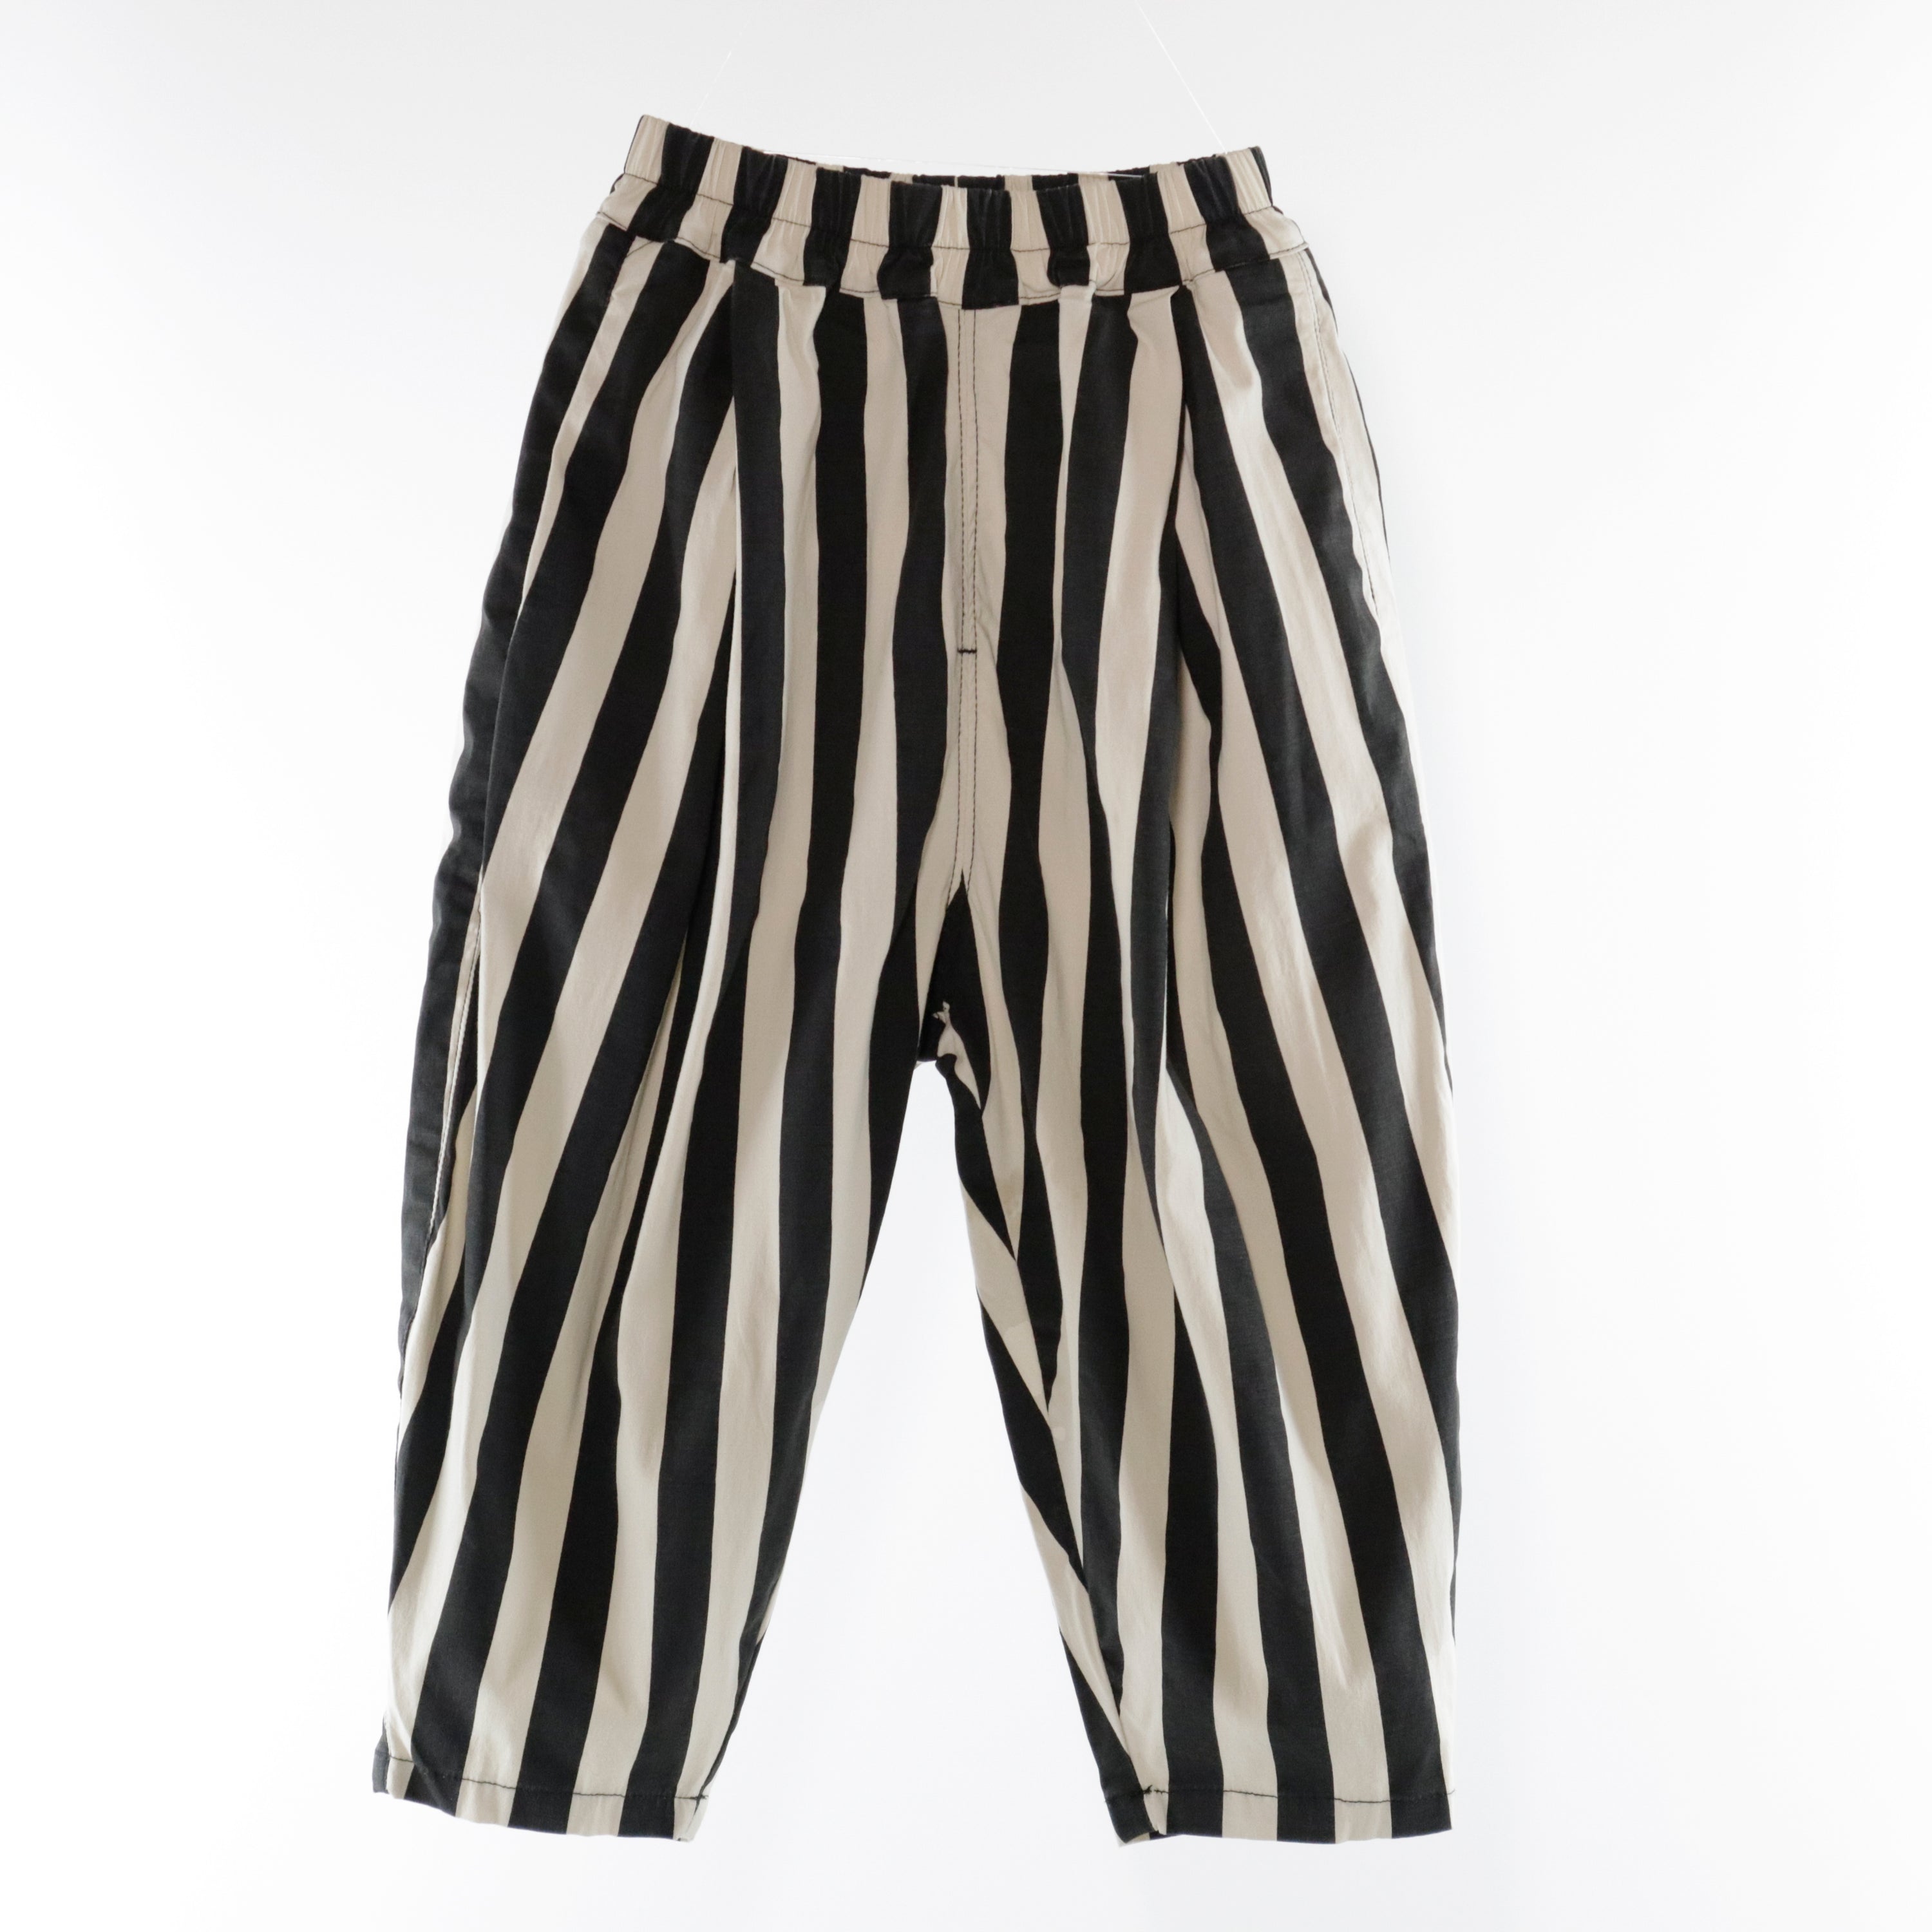 PH Stripe Cotton Pants (Ready Stock)